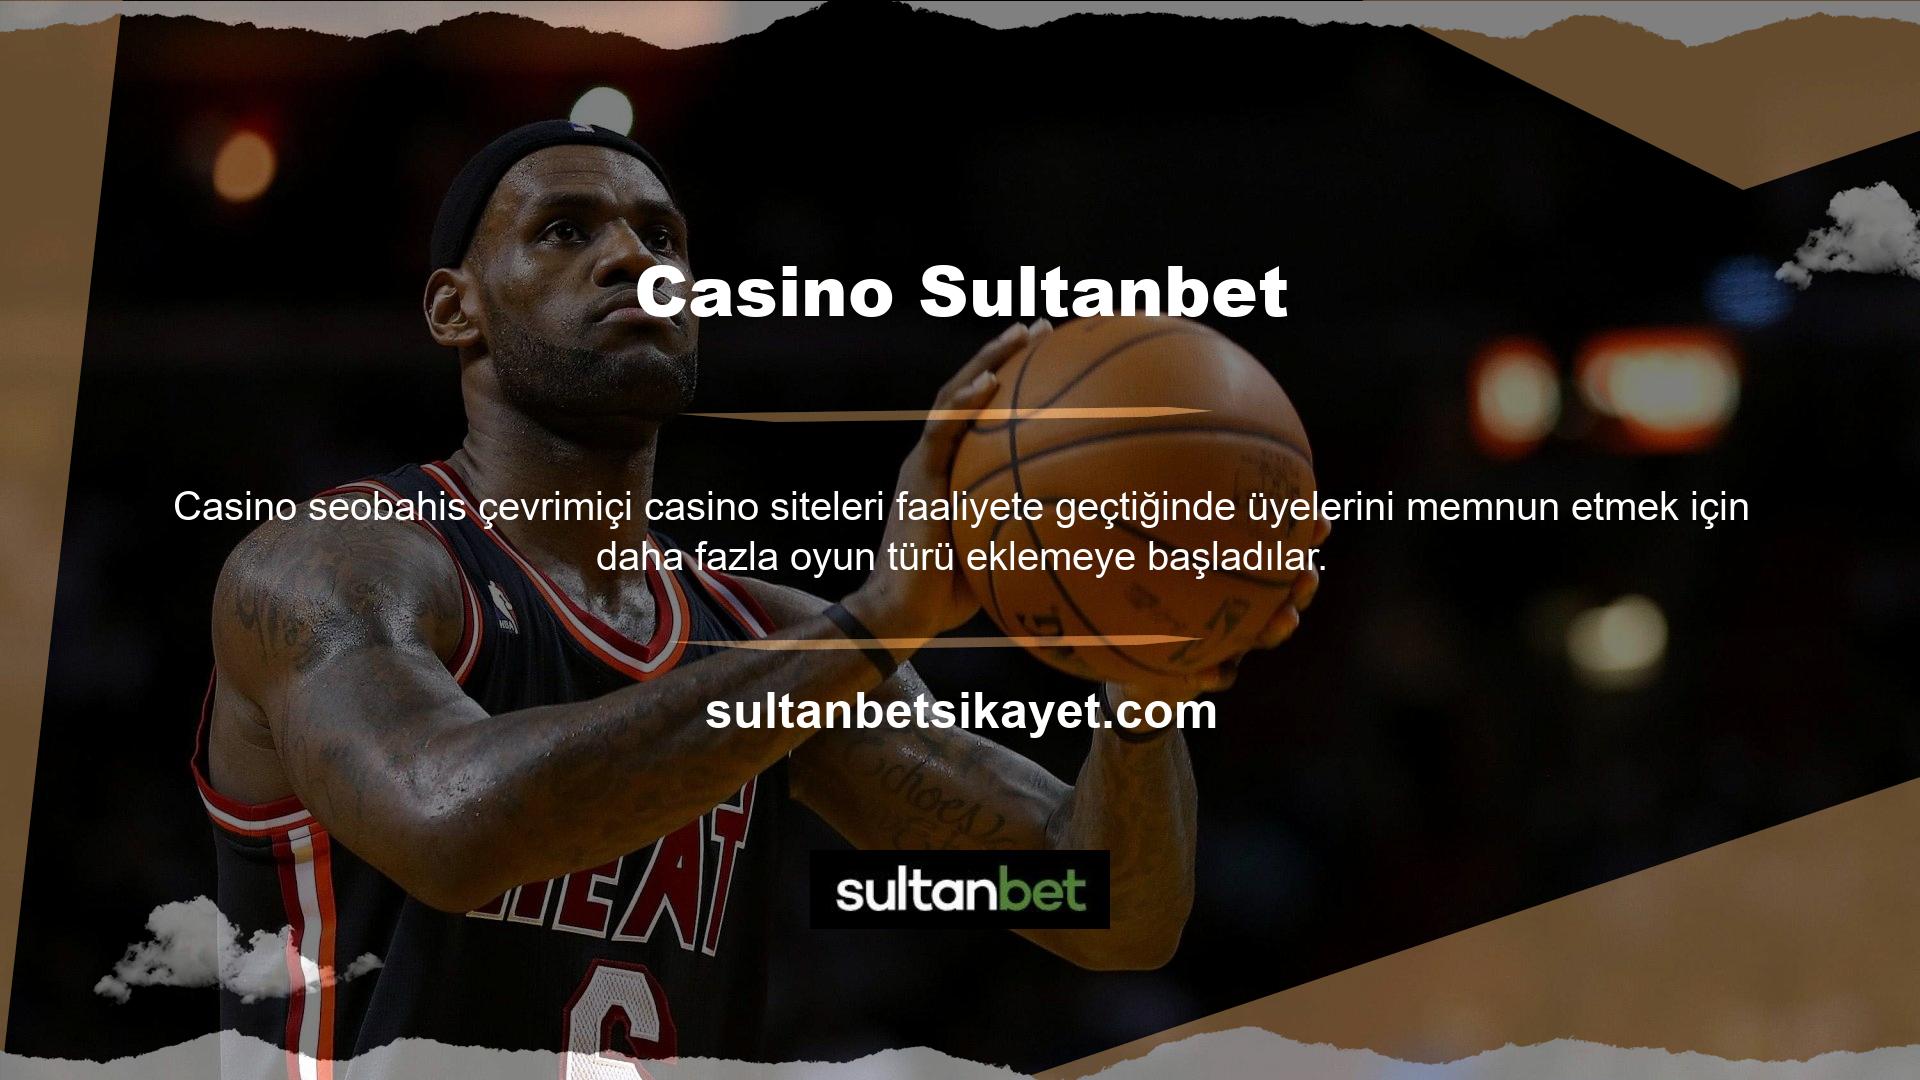 Sultanbet kayıt sayfasındaki oyun seçenekleri slot, bingo ve canlı casino oyunlarını içermektedir